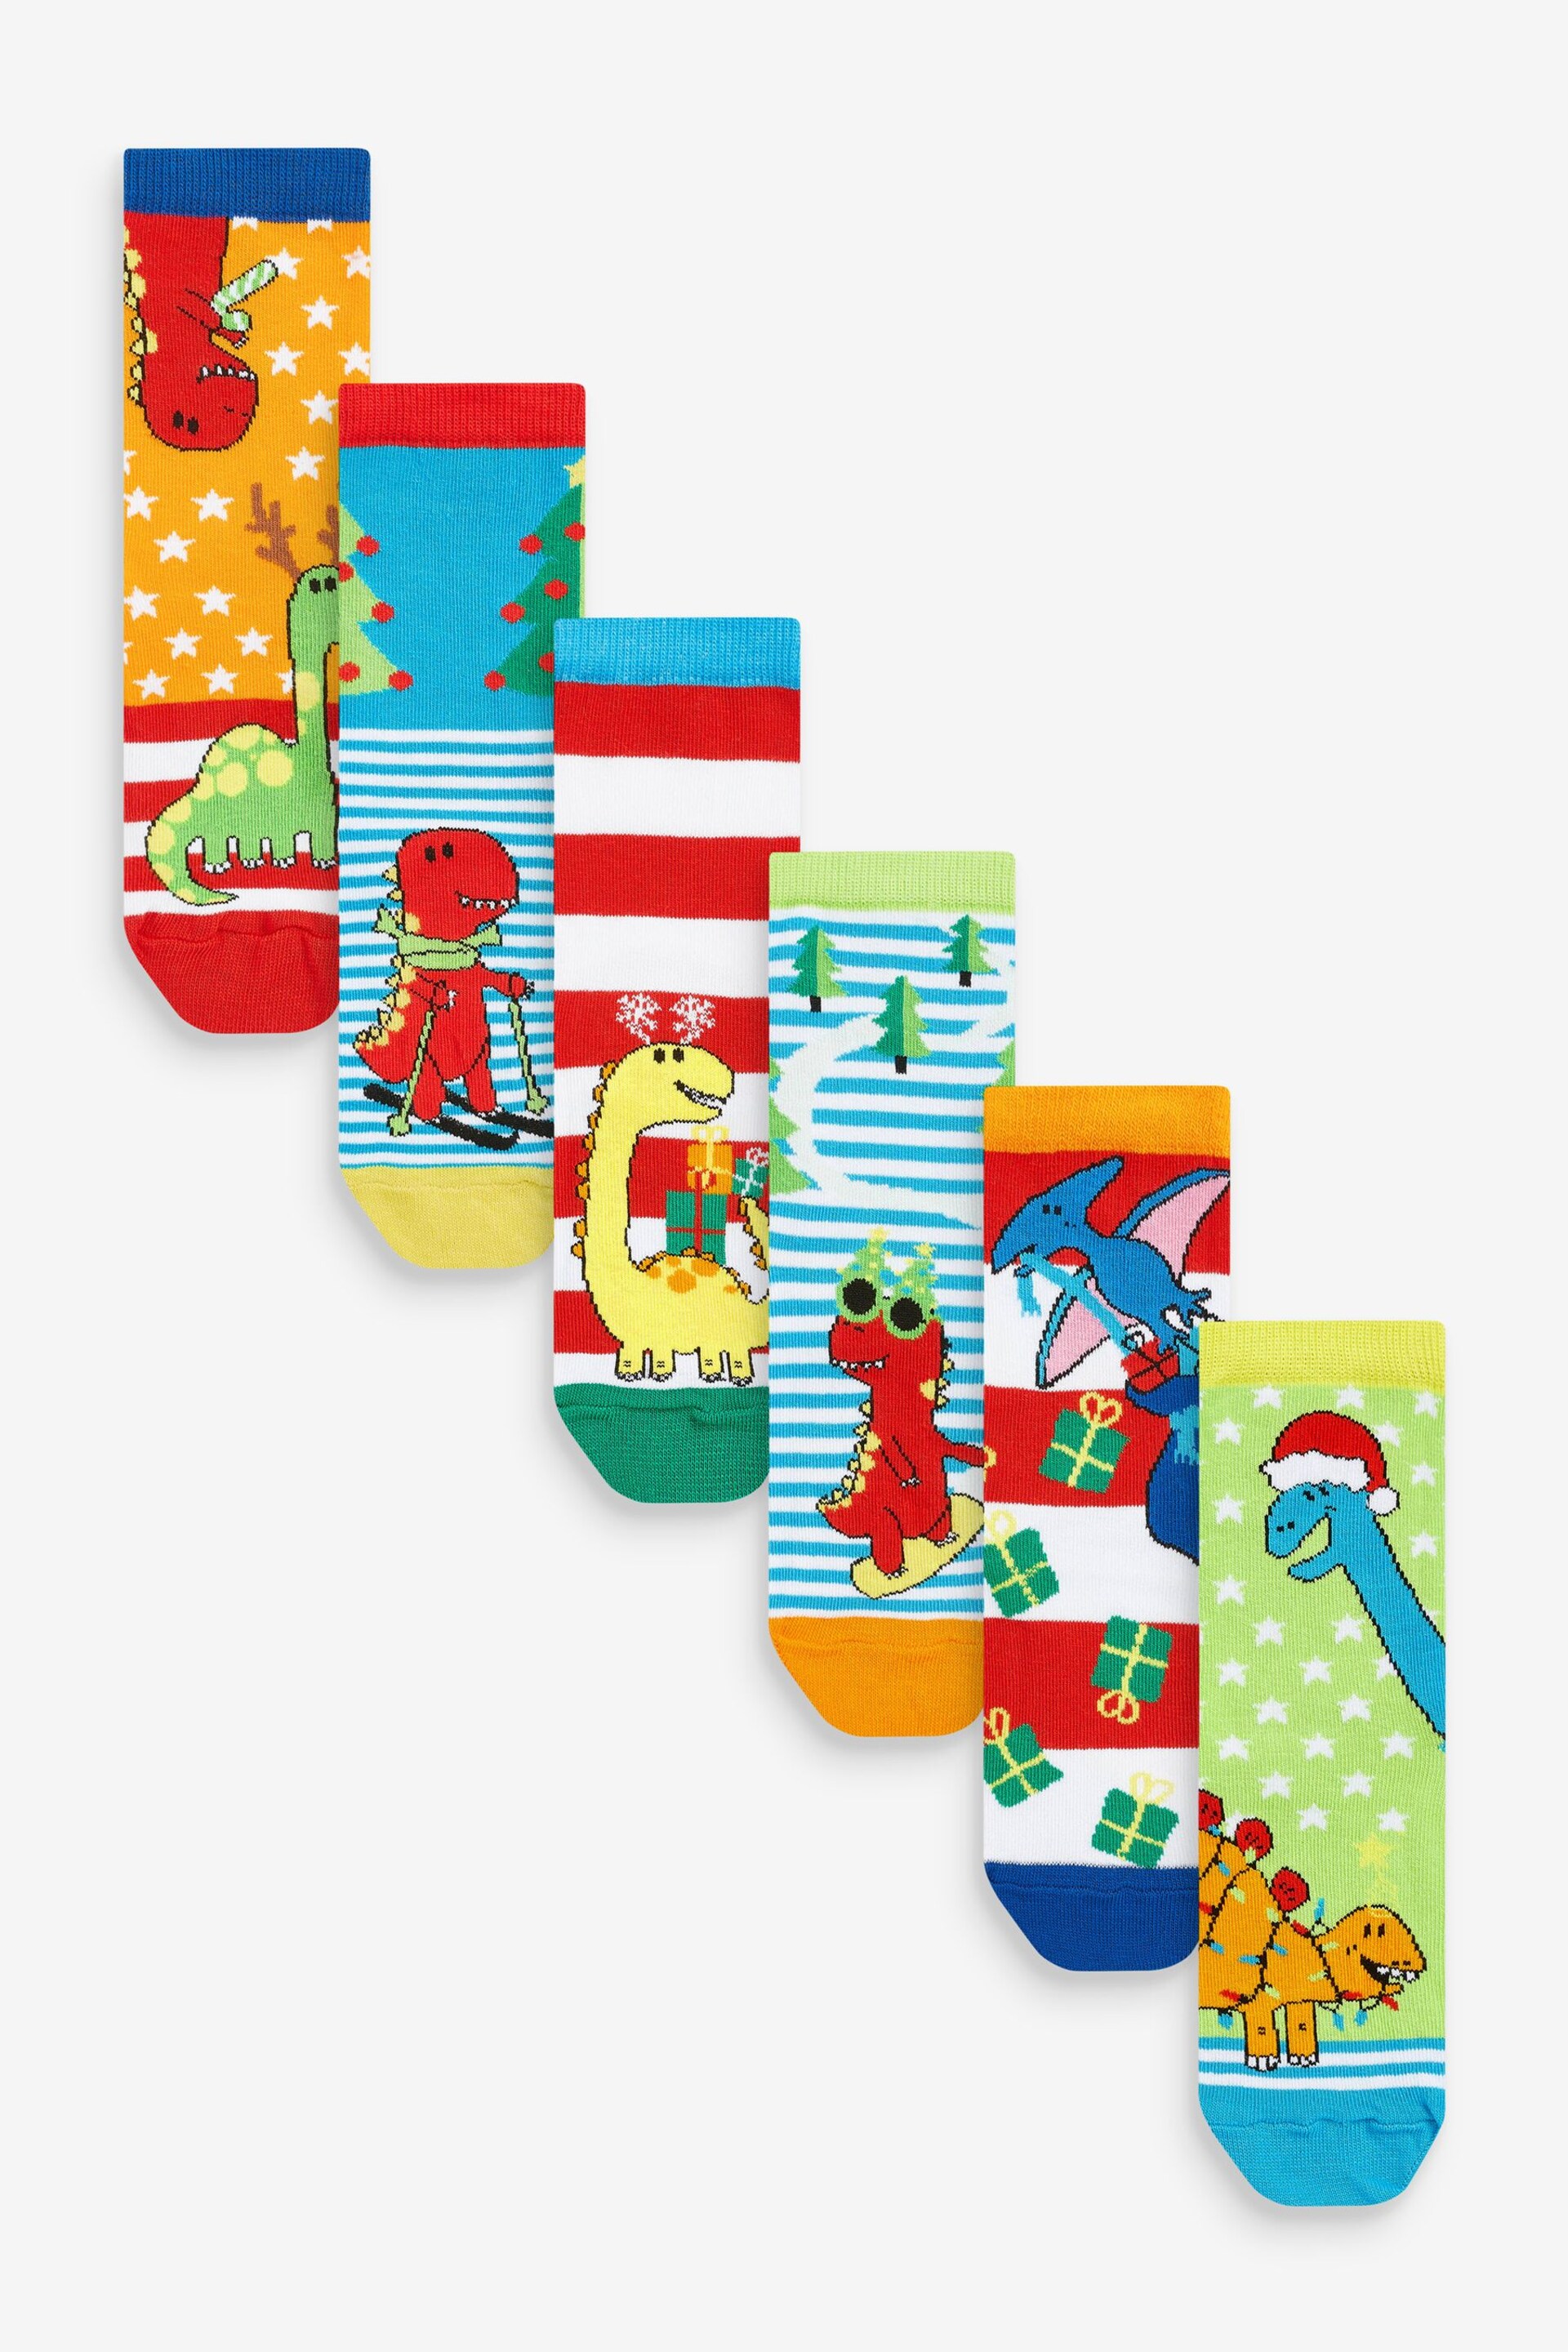 United Odd Socks Black Santa Saurus Socks - Image 3 of 10